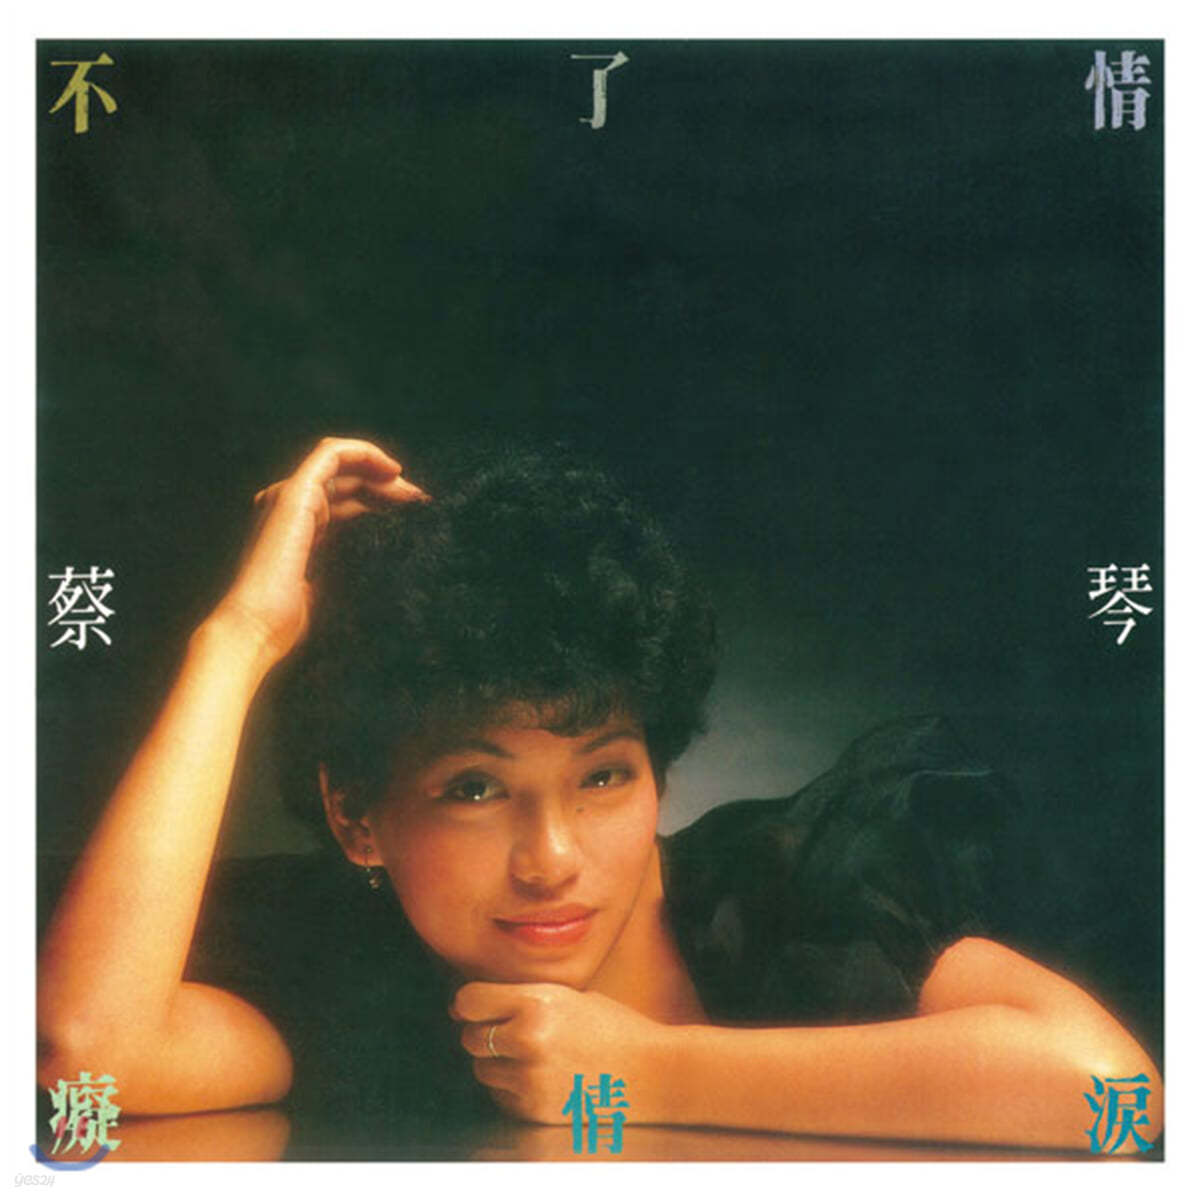 Tsai Chin (채금) - Endless Love [LP]